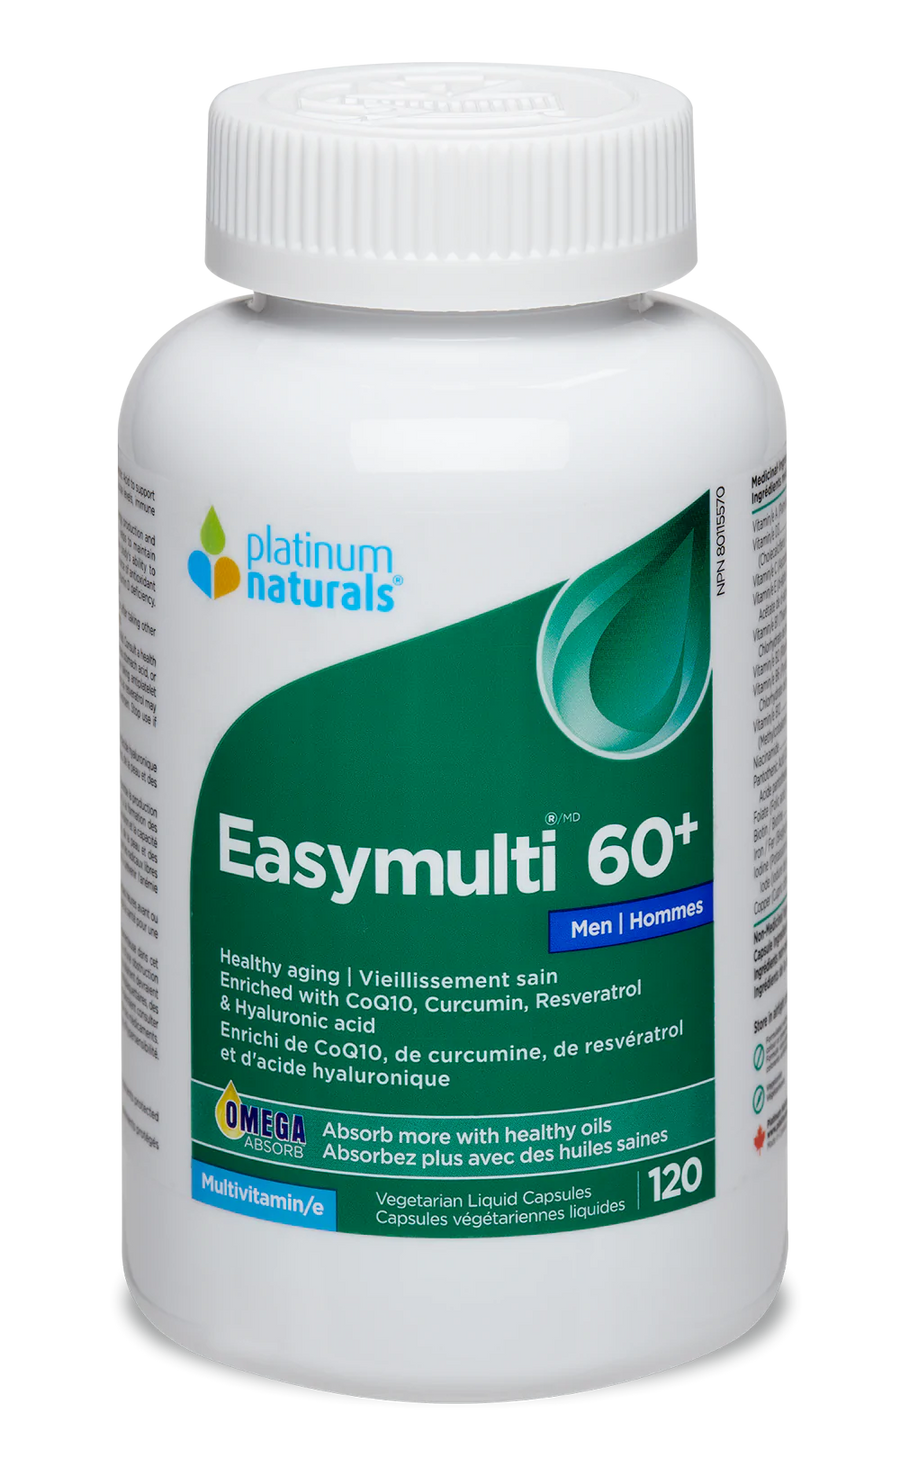 Platinum Naturals Easymulti 60+ for Men Veg. Liquid Capsules